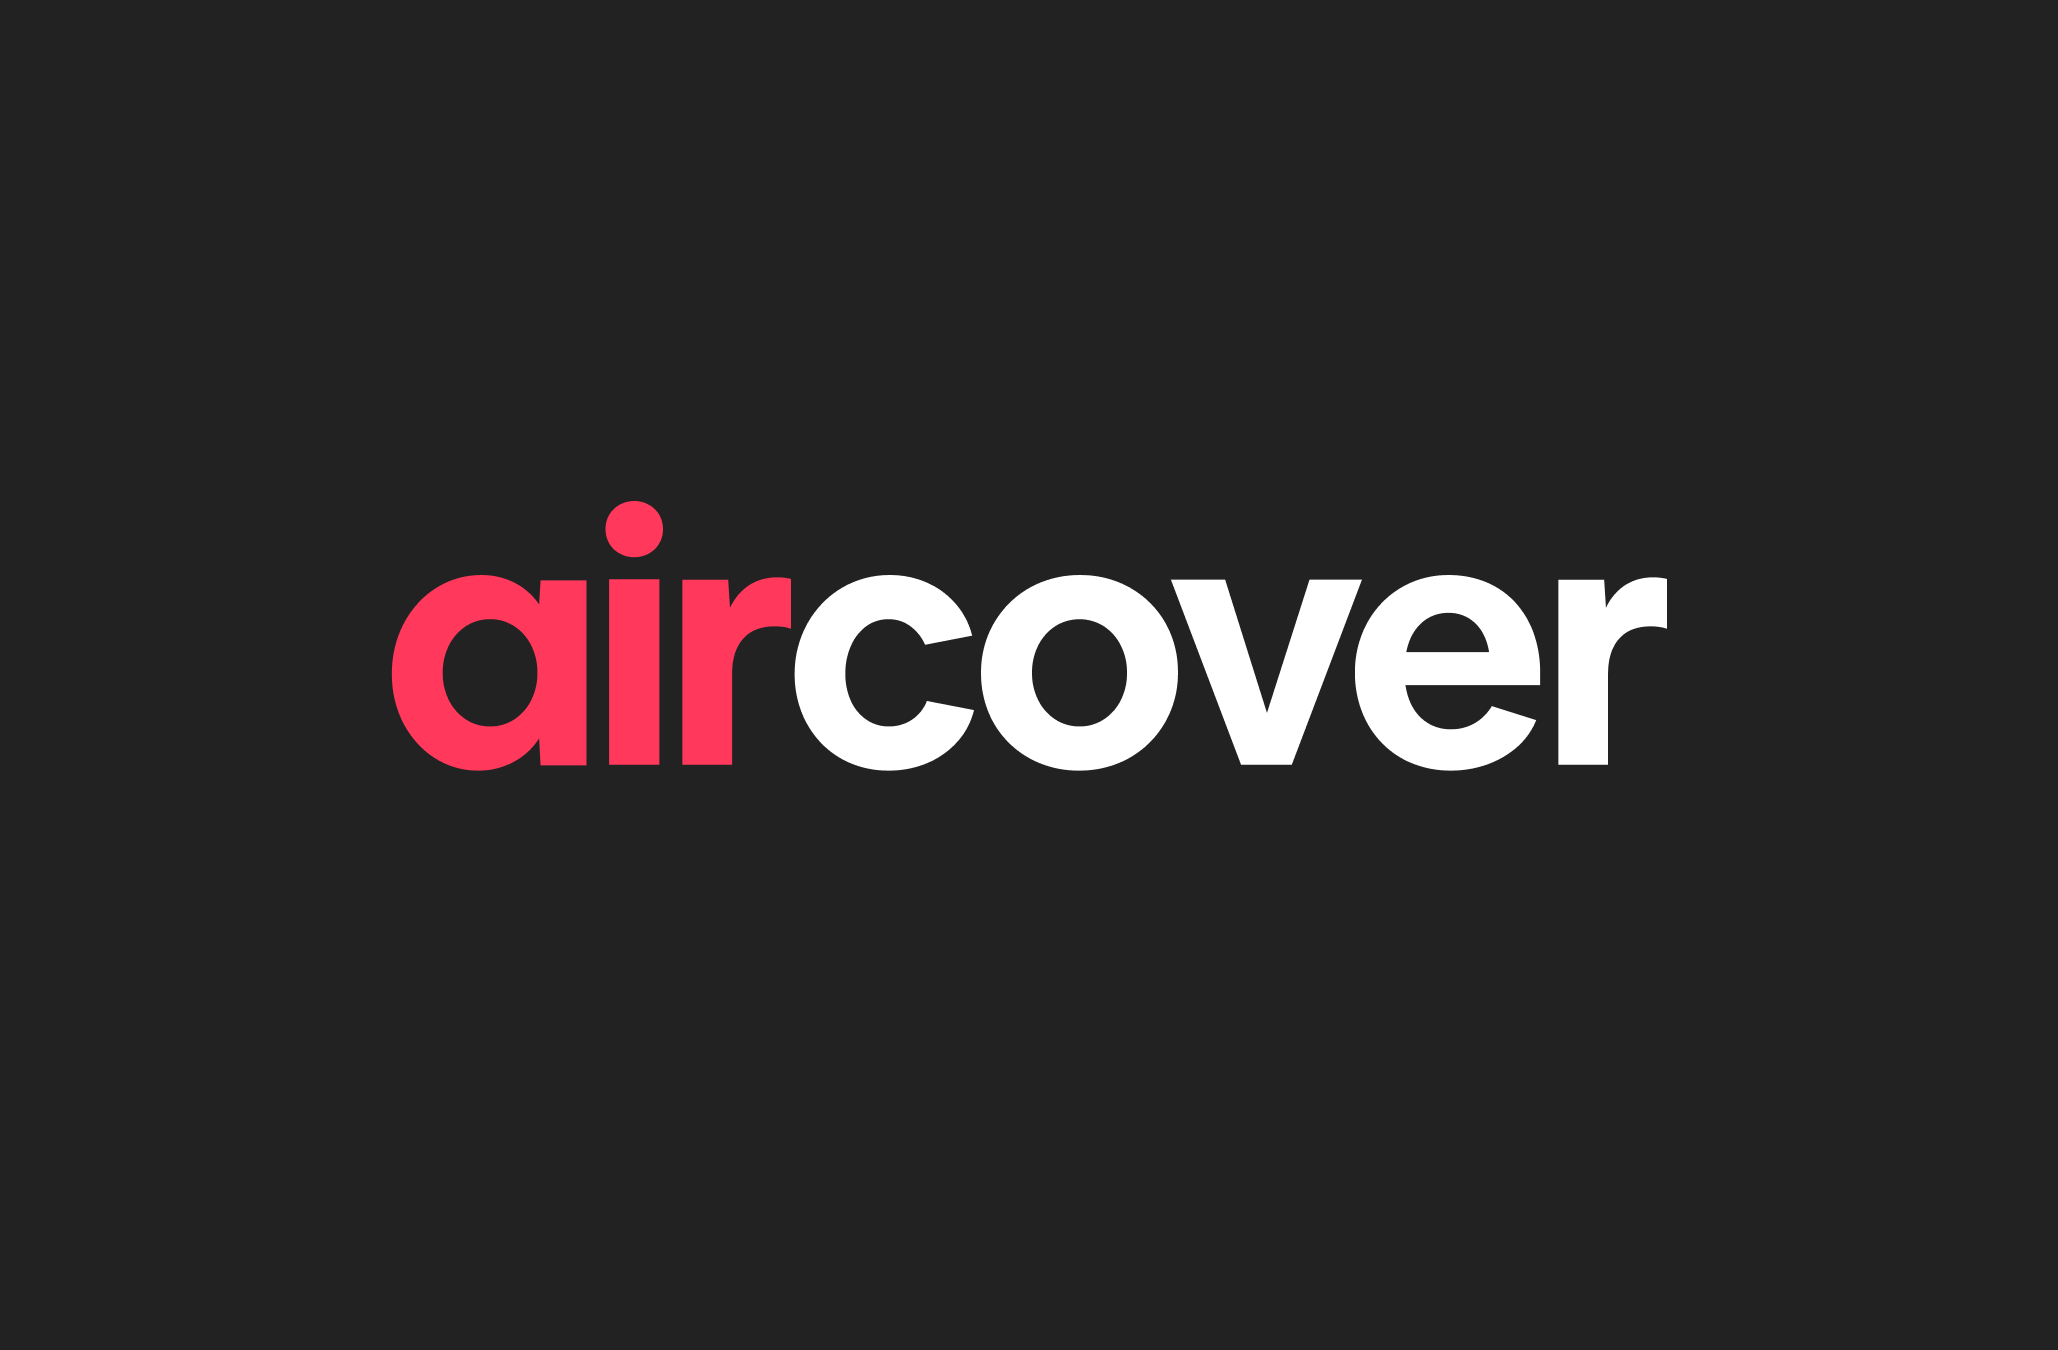 לוגו של AirCover, באותיות אדומות ולבנות, על רקע שחור.